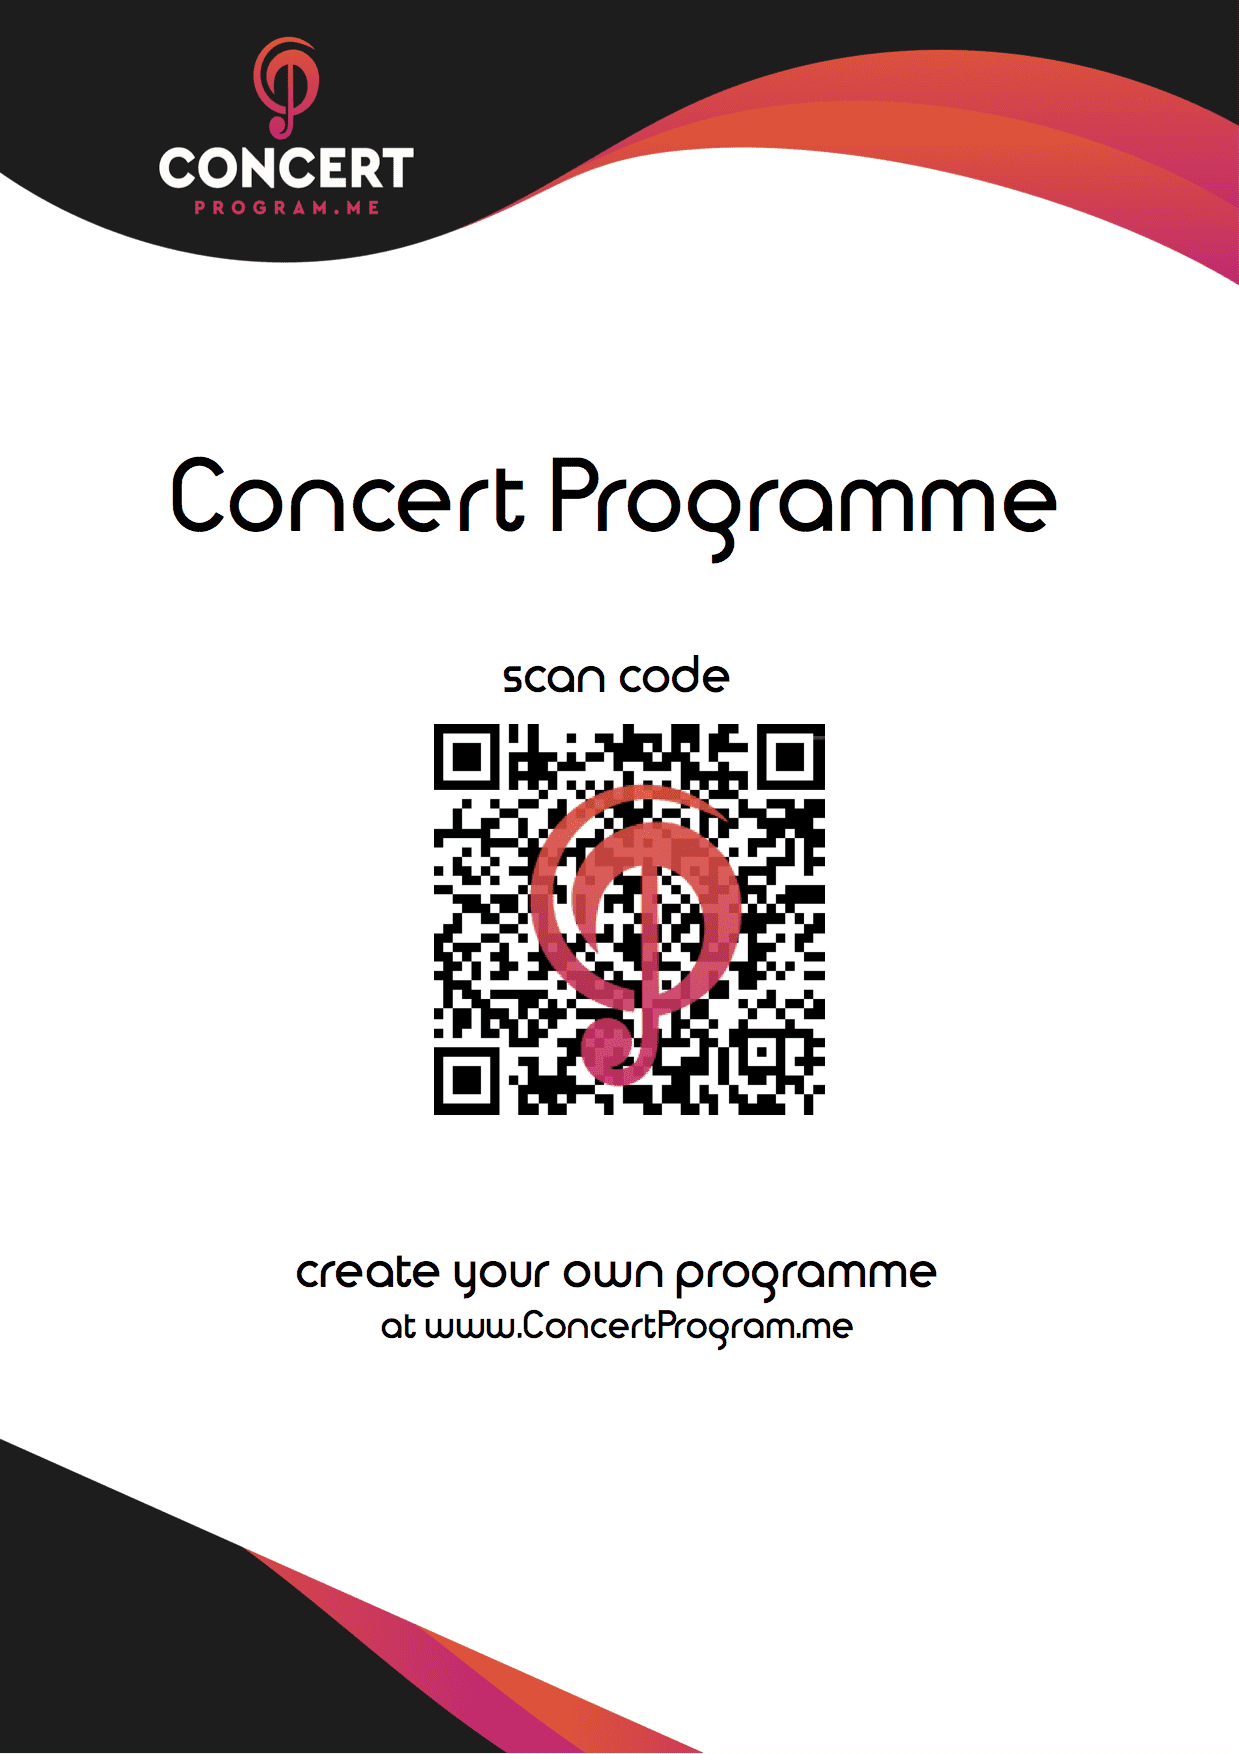 ConcertProgram.me sample QR poster